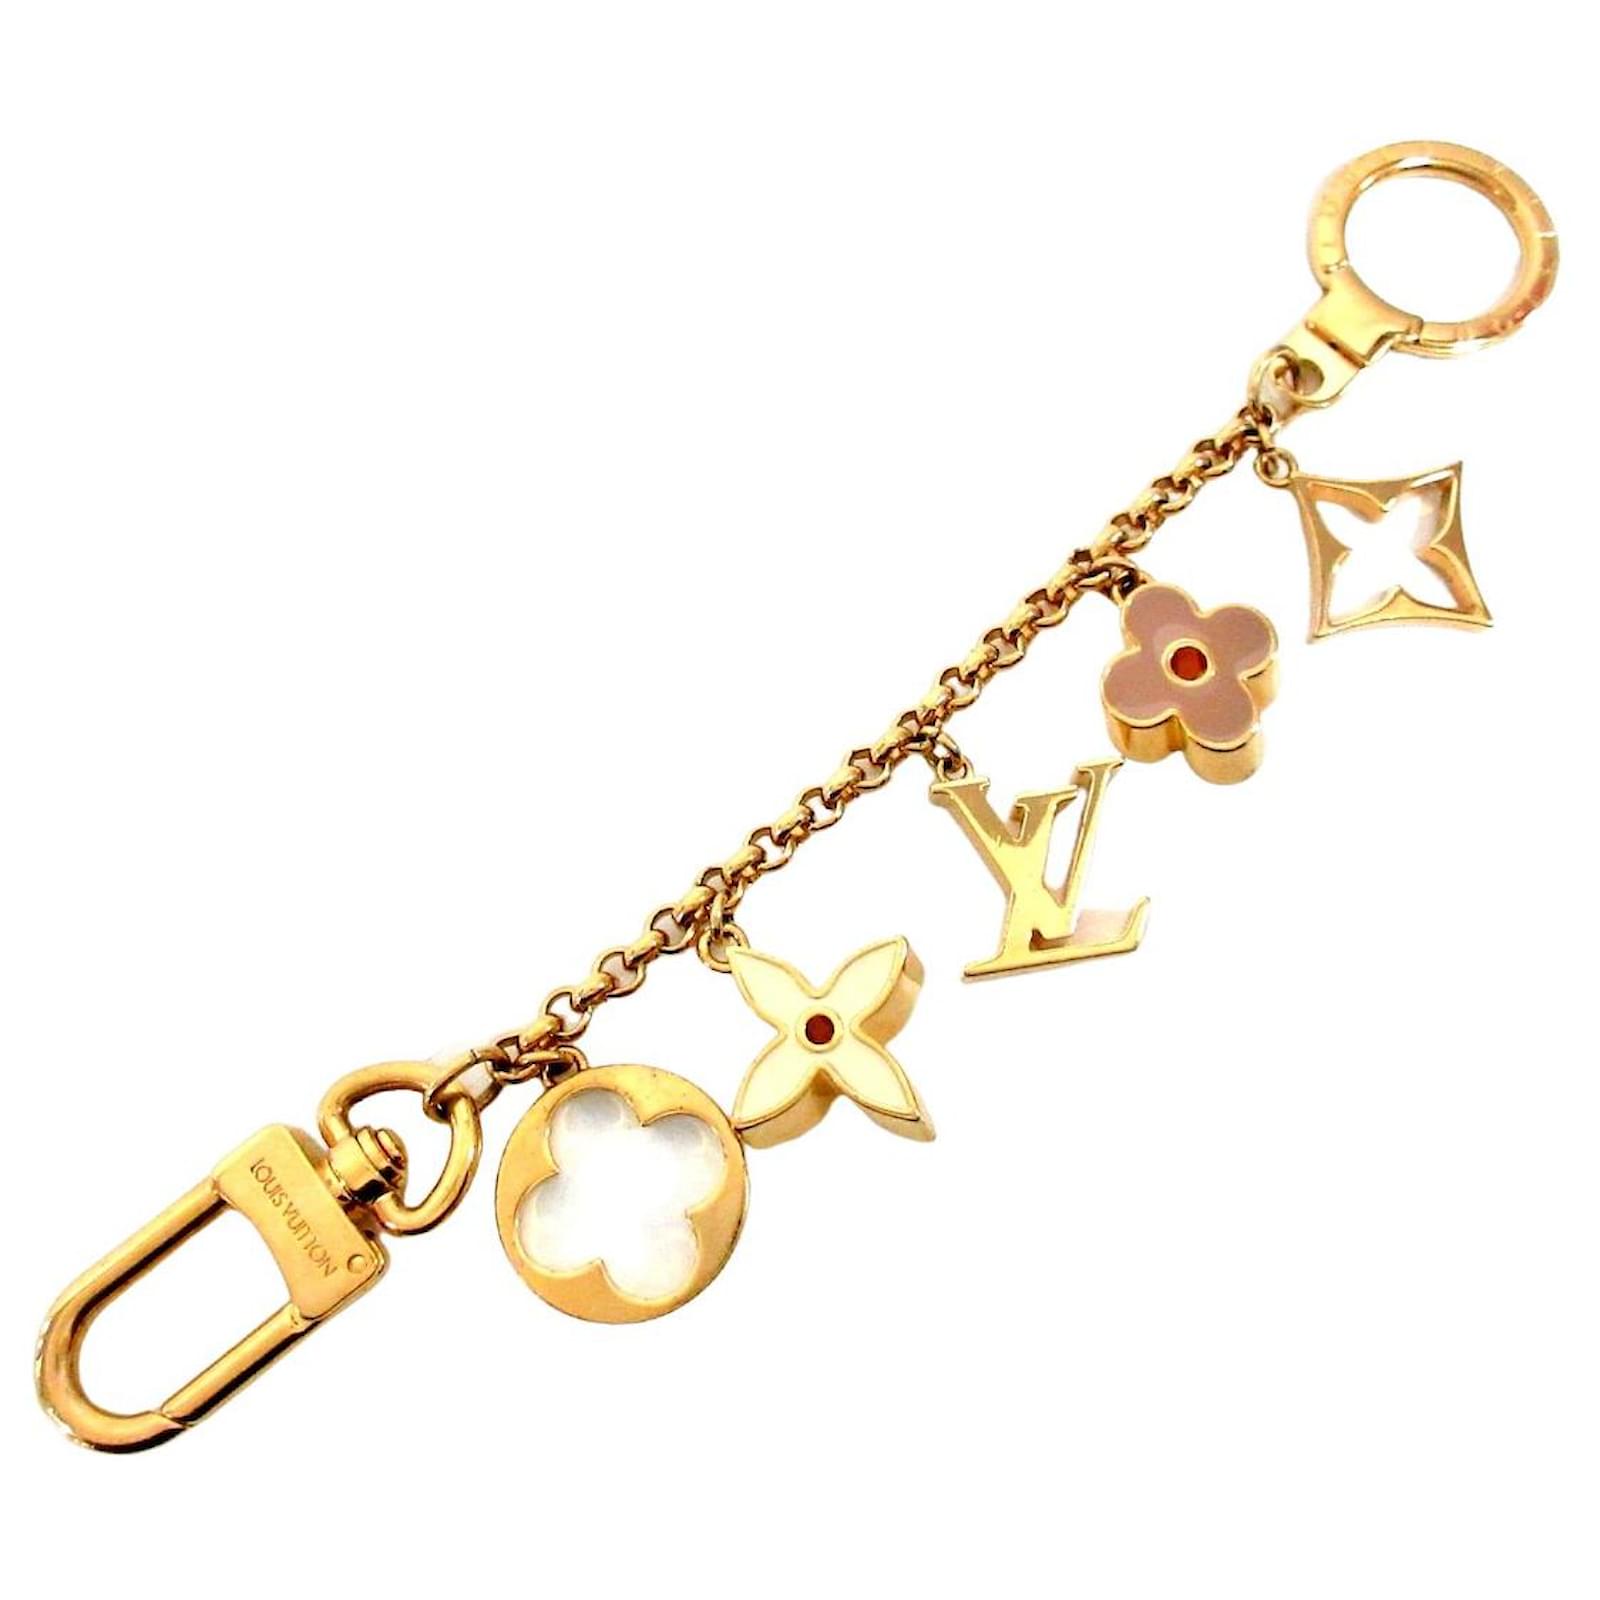 Louis Vuitton Fleur de Monogram Bag Charm Gold Metal